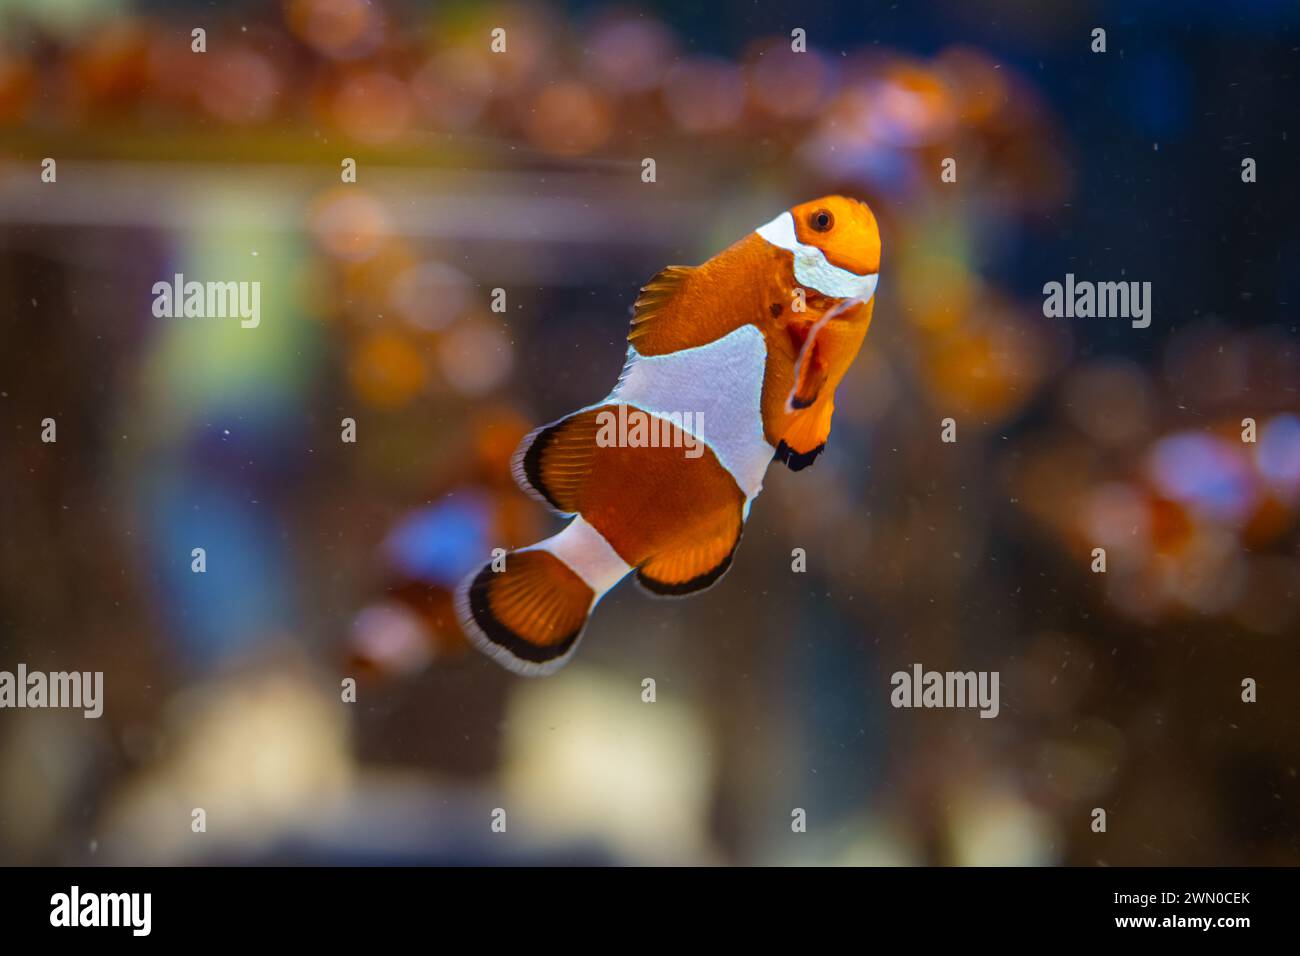 Horizontal photo of Orange Clownfish also known as Nemo. Stock Photo